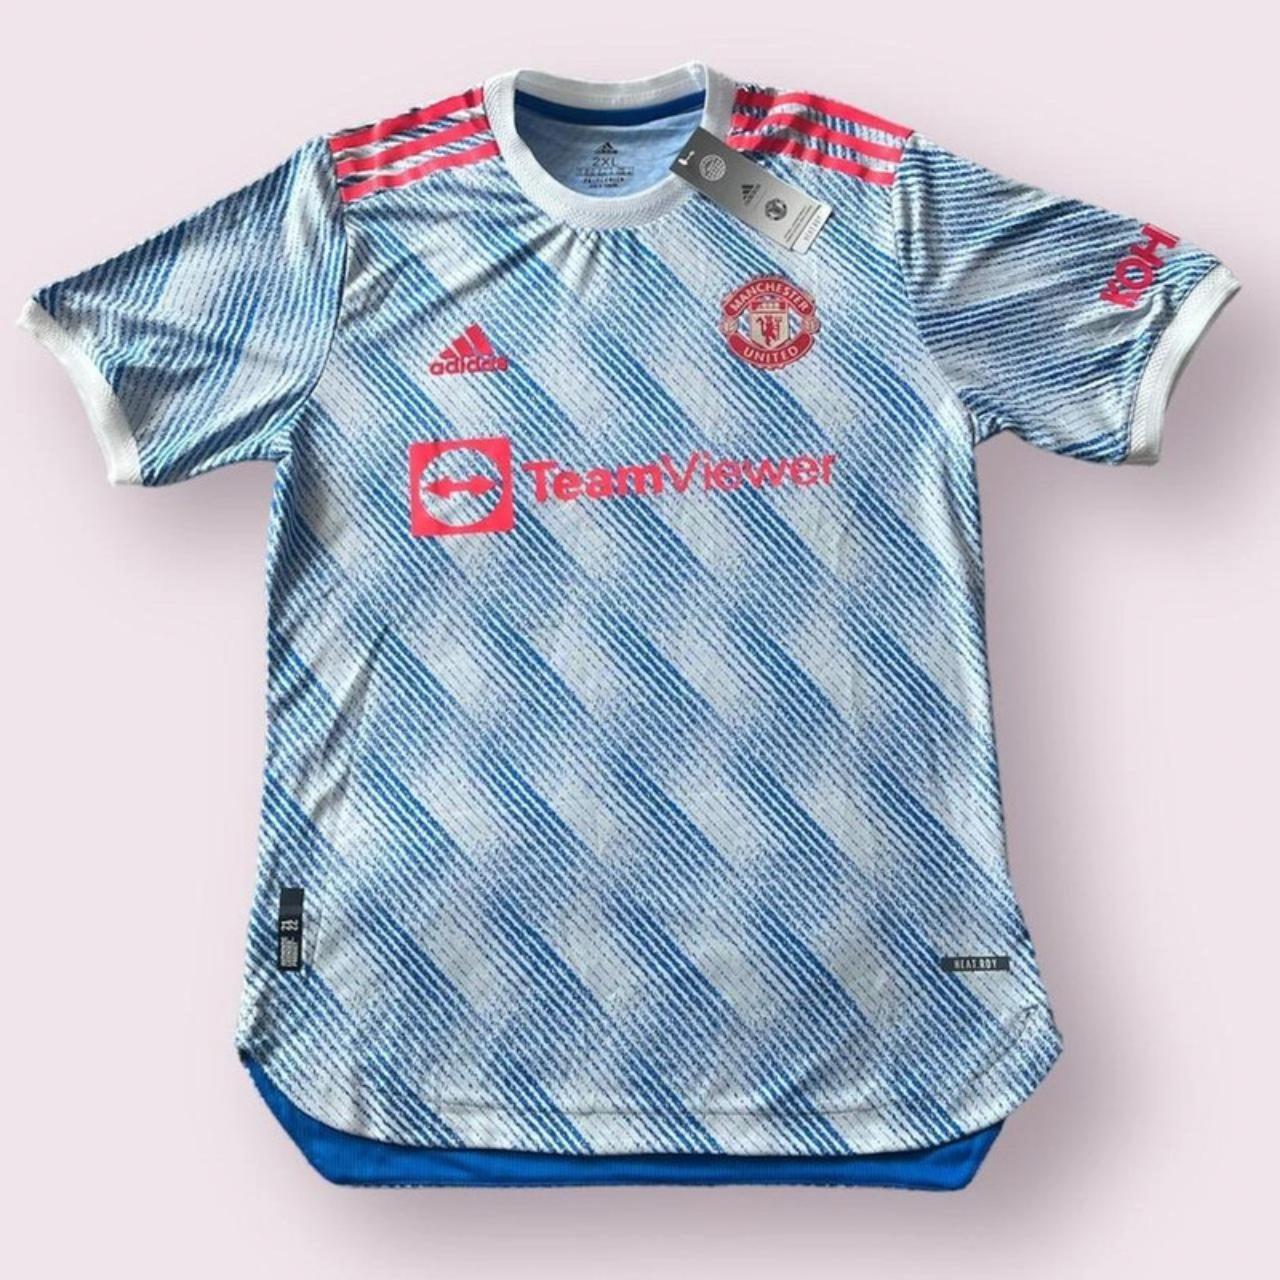 Adidas 2021-22 Manchester United Away Shirt New... - Depop